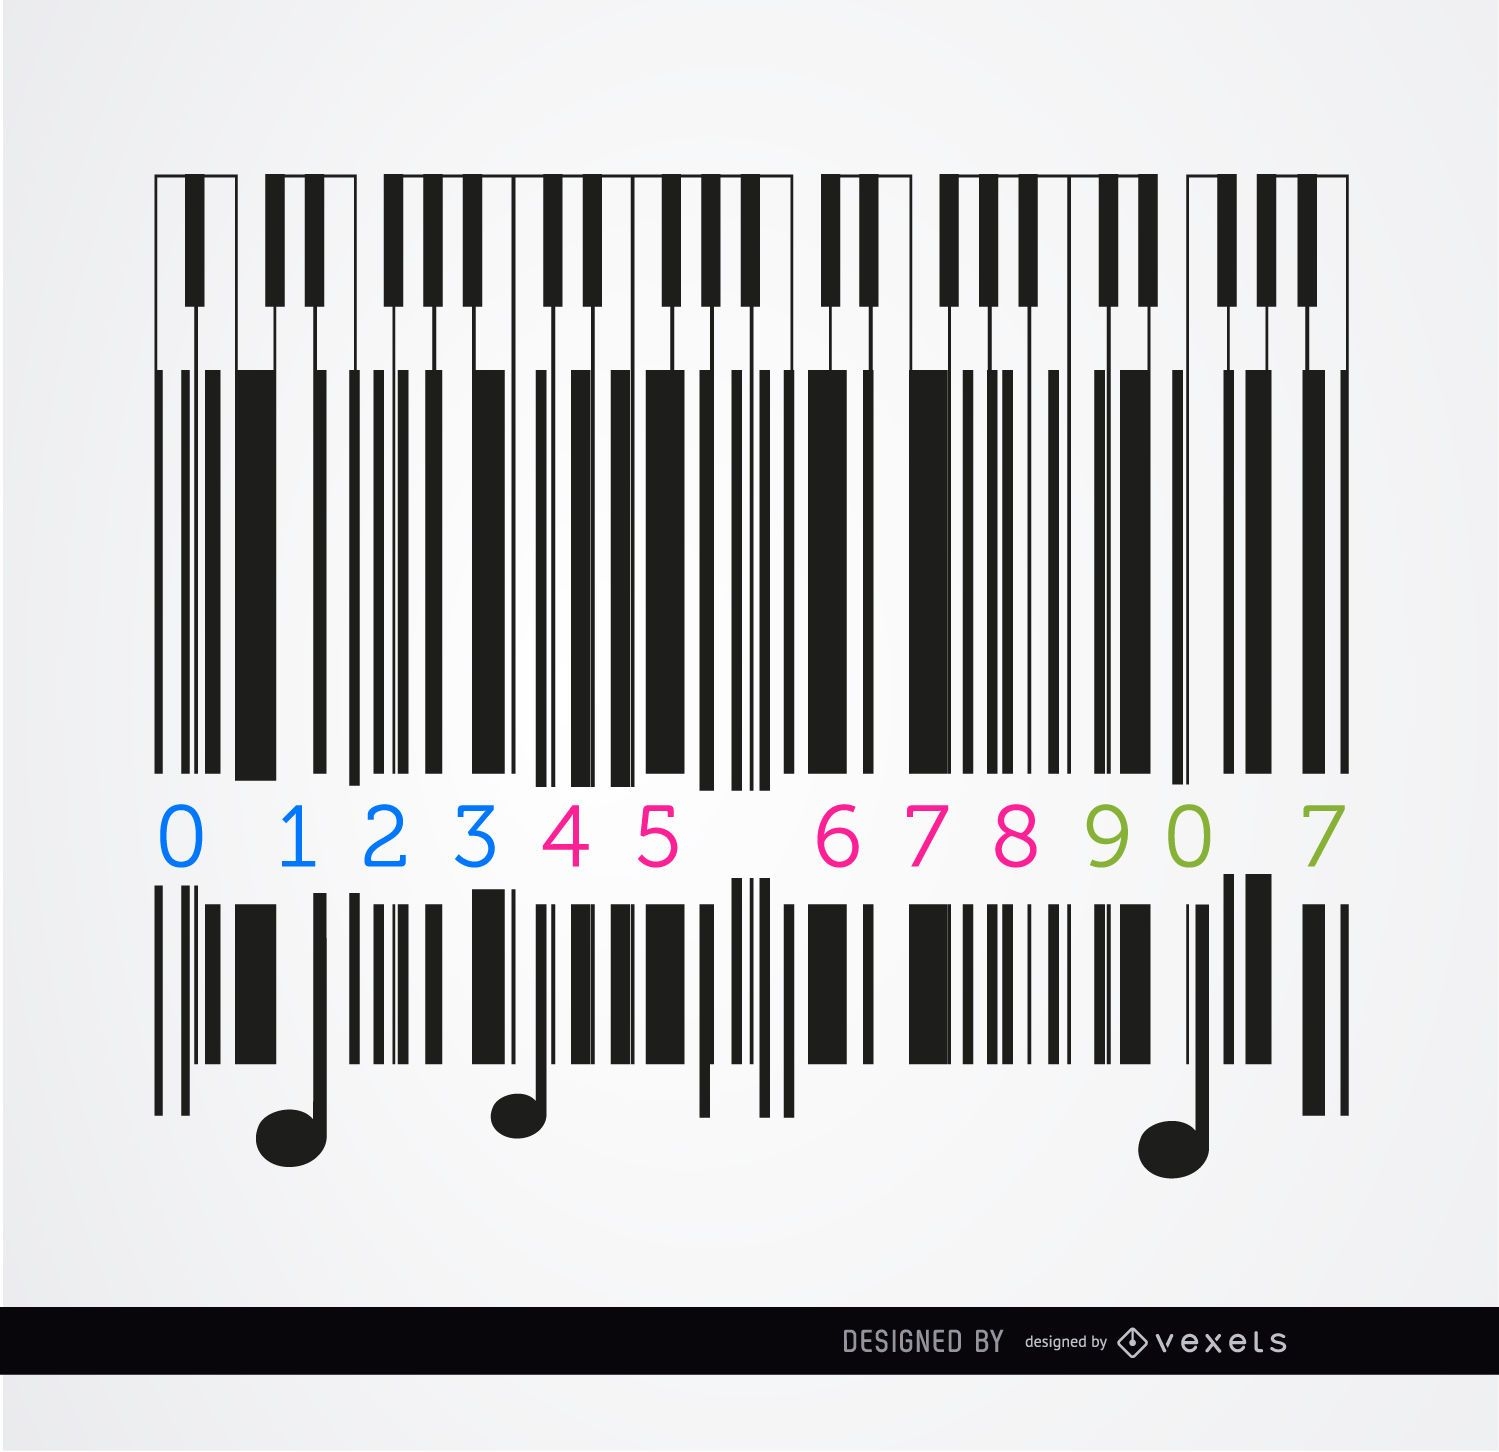 Codebar piano musical design